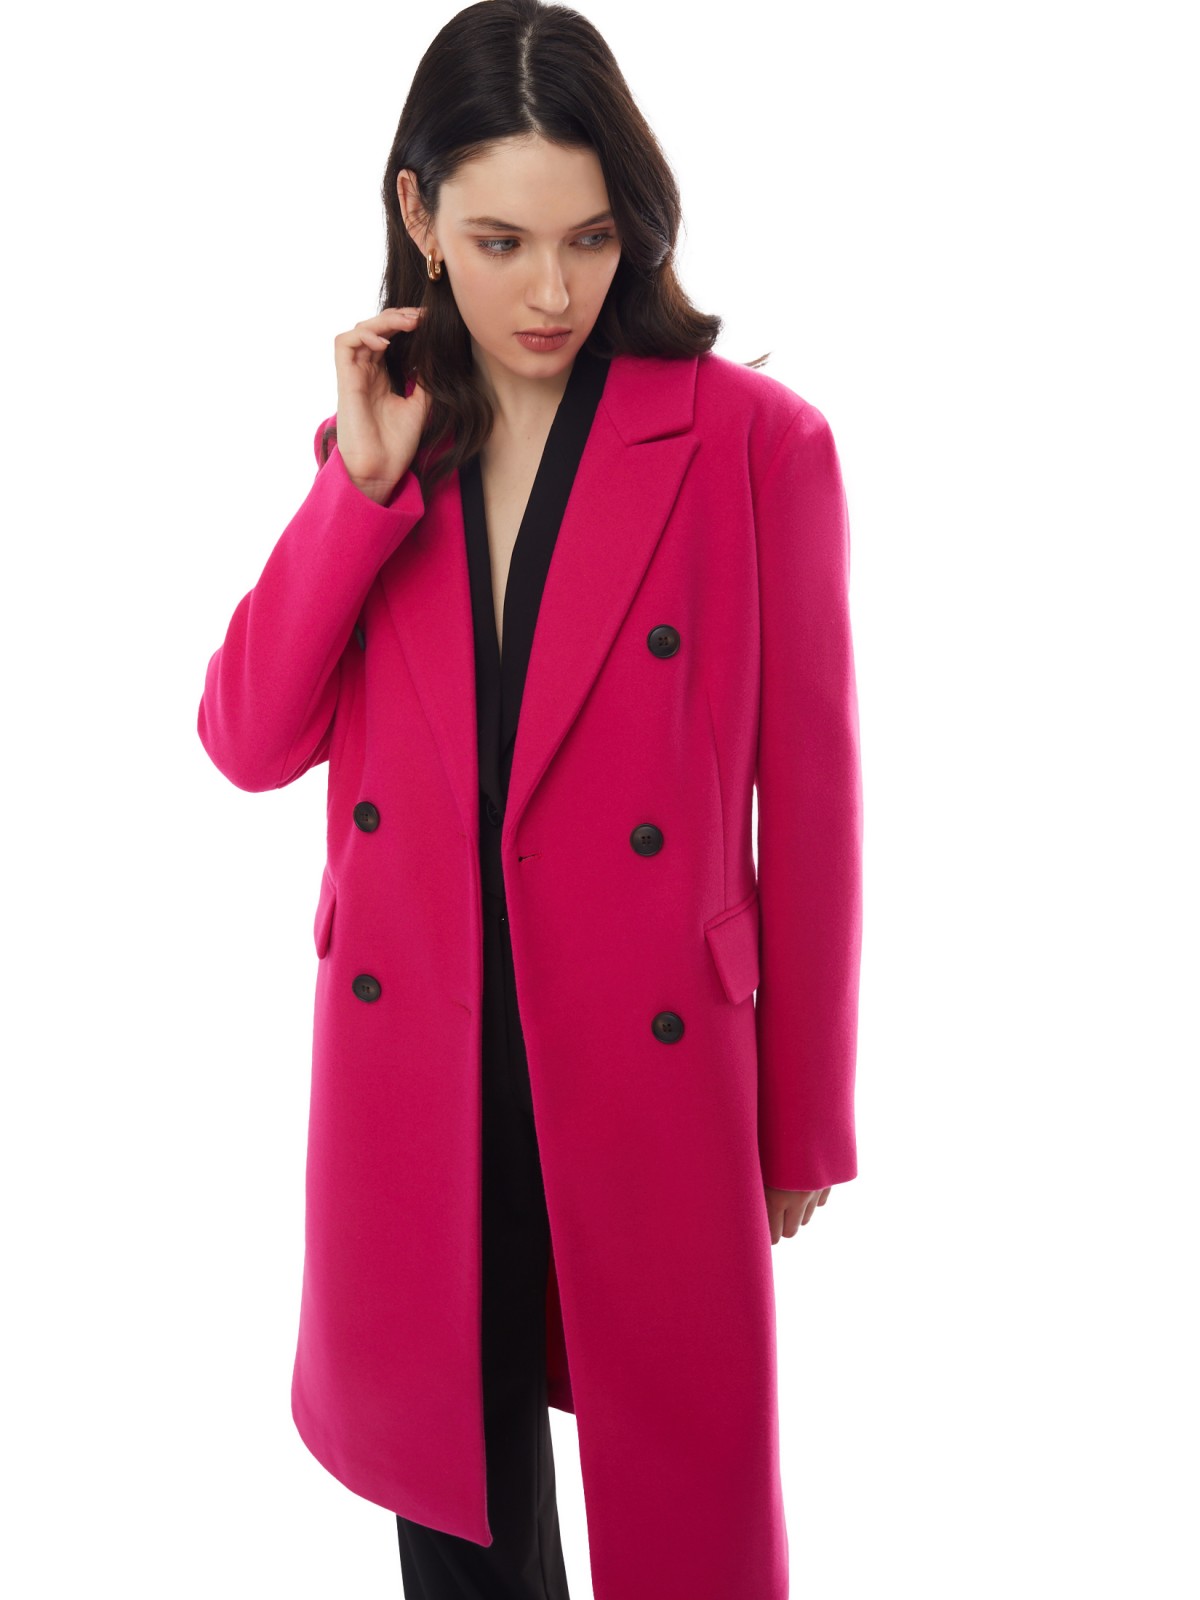 Тёплое пальто полуприлегающего фасона с отложным воротником zolla 024125857164, цвет фуксия, размер XS - фото 3